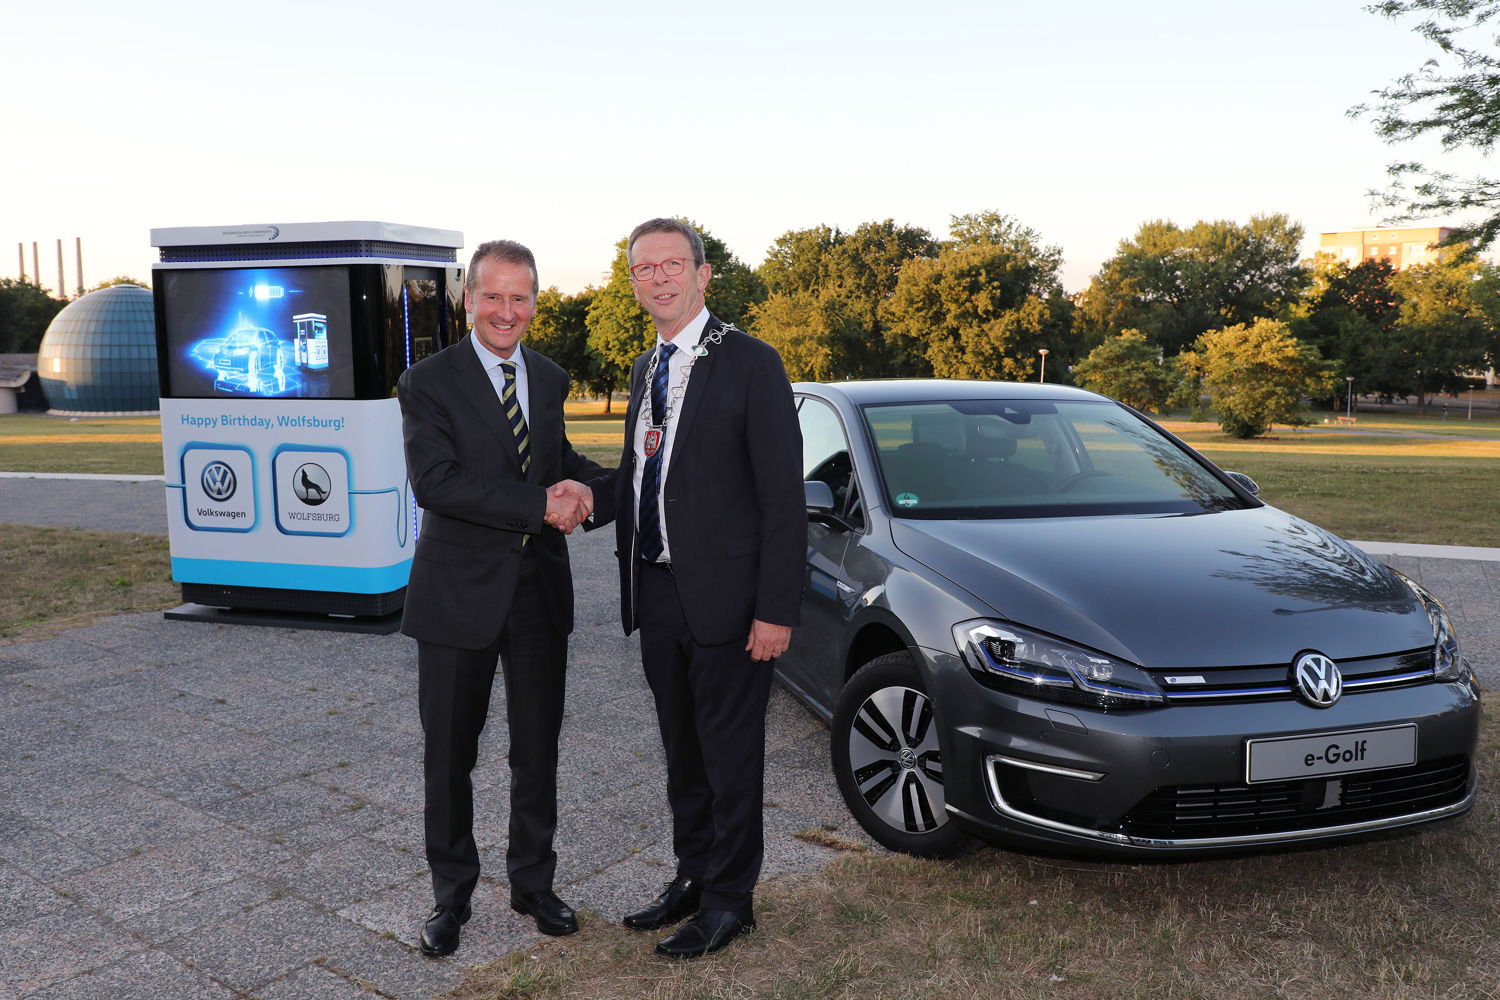 El Director Ejecutivo de Volkswagen, el Dr. Herbert Diess hizo un regalo a la ciudad de Wolfsburg por su 80 aniversario a su Alcalde, Klaus Mohrs.